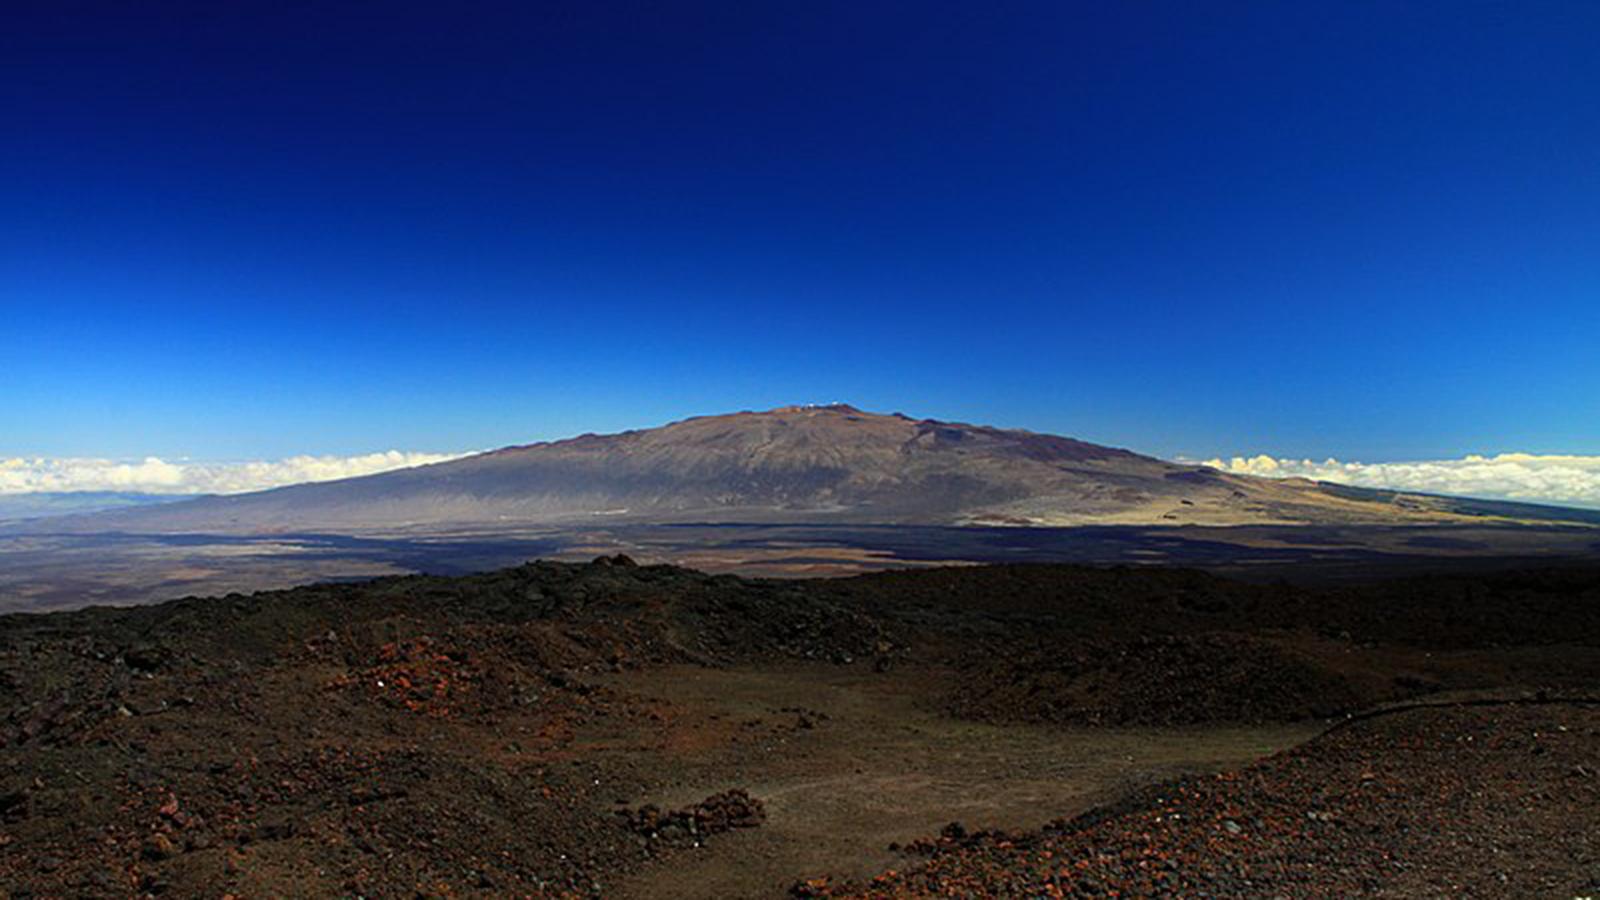 Mauna_Kea_from_Mauna_Loa_Observatory,_Hawaii_-_20100913.jpg